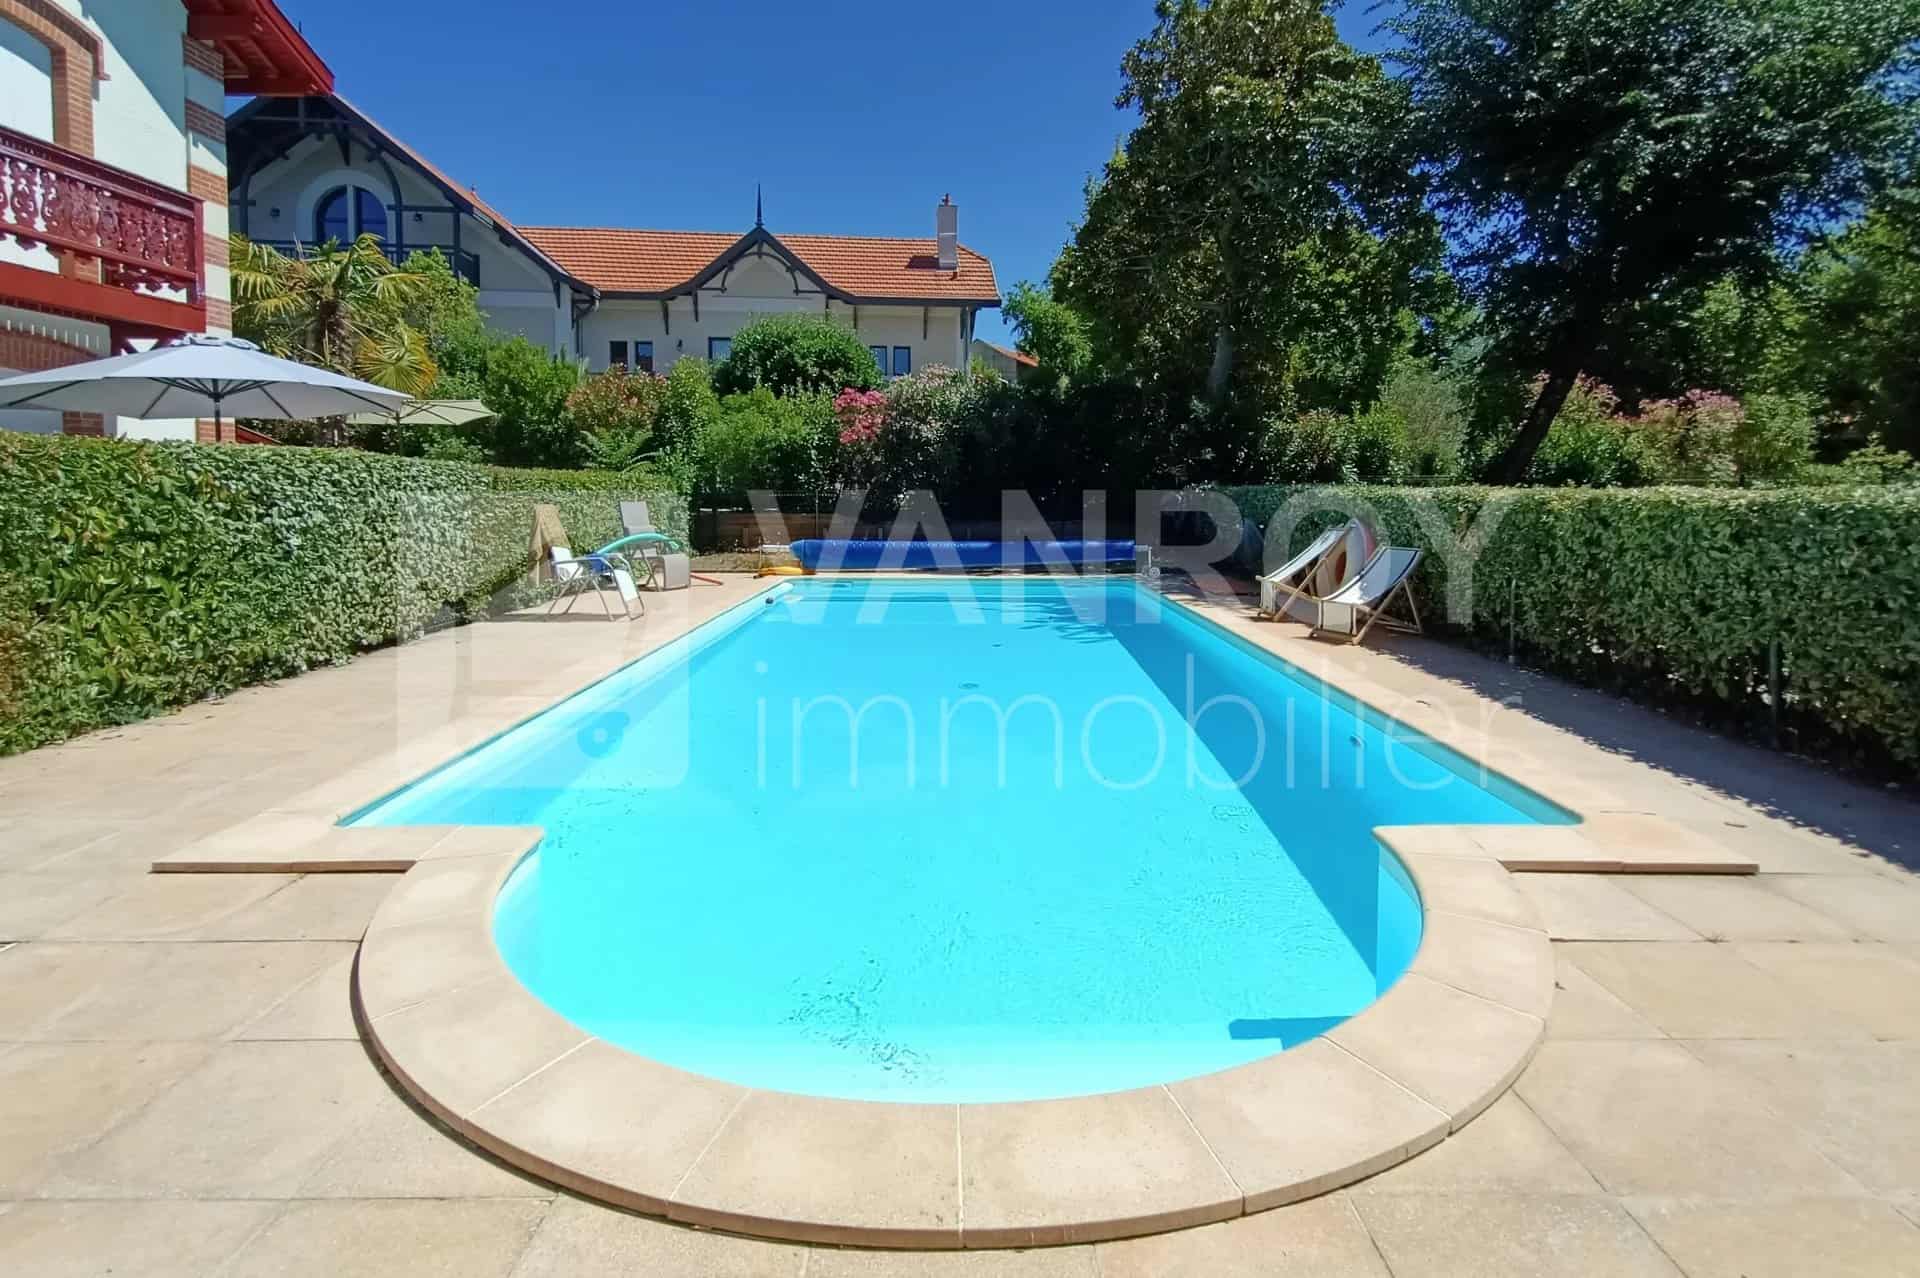 Vendu par VANROY Immobilier !Arcachon – Ville d’hiver / T2 avec terrasse et jardin dans copropriété avec piscine